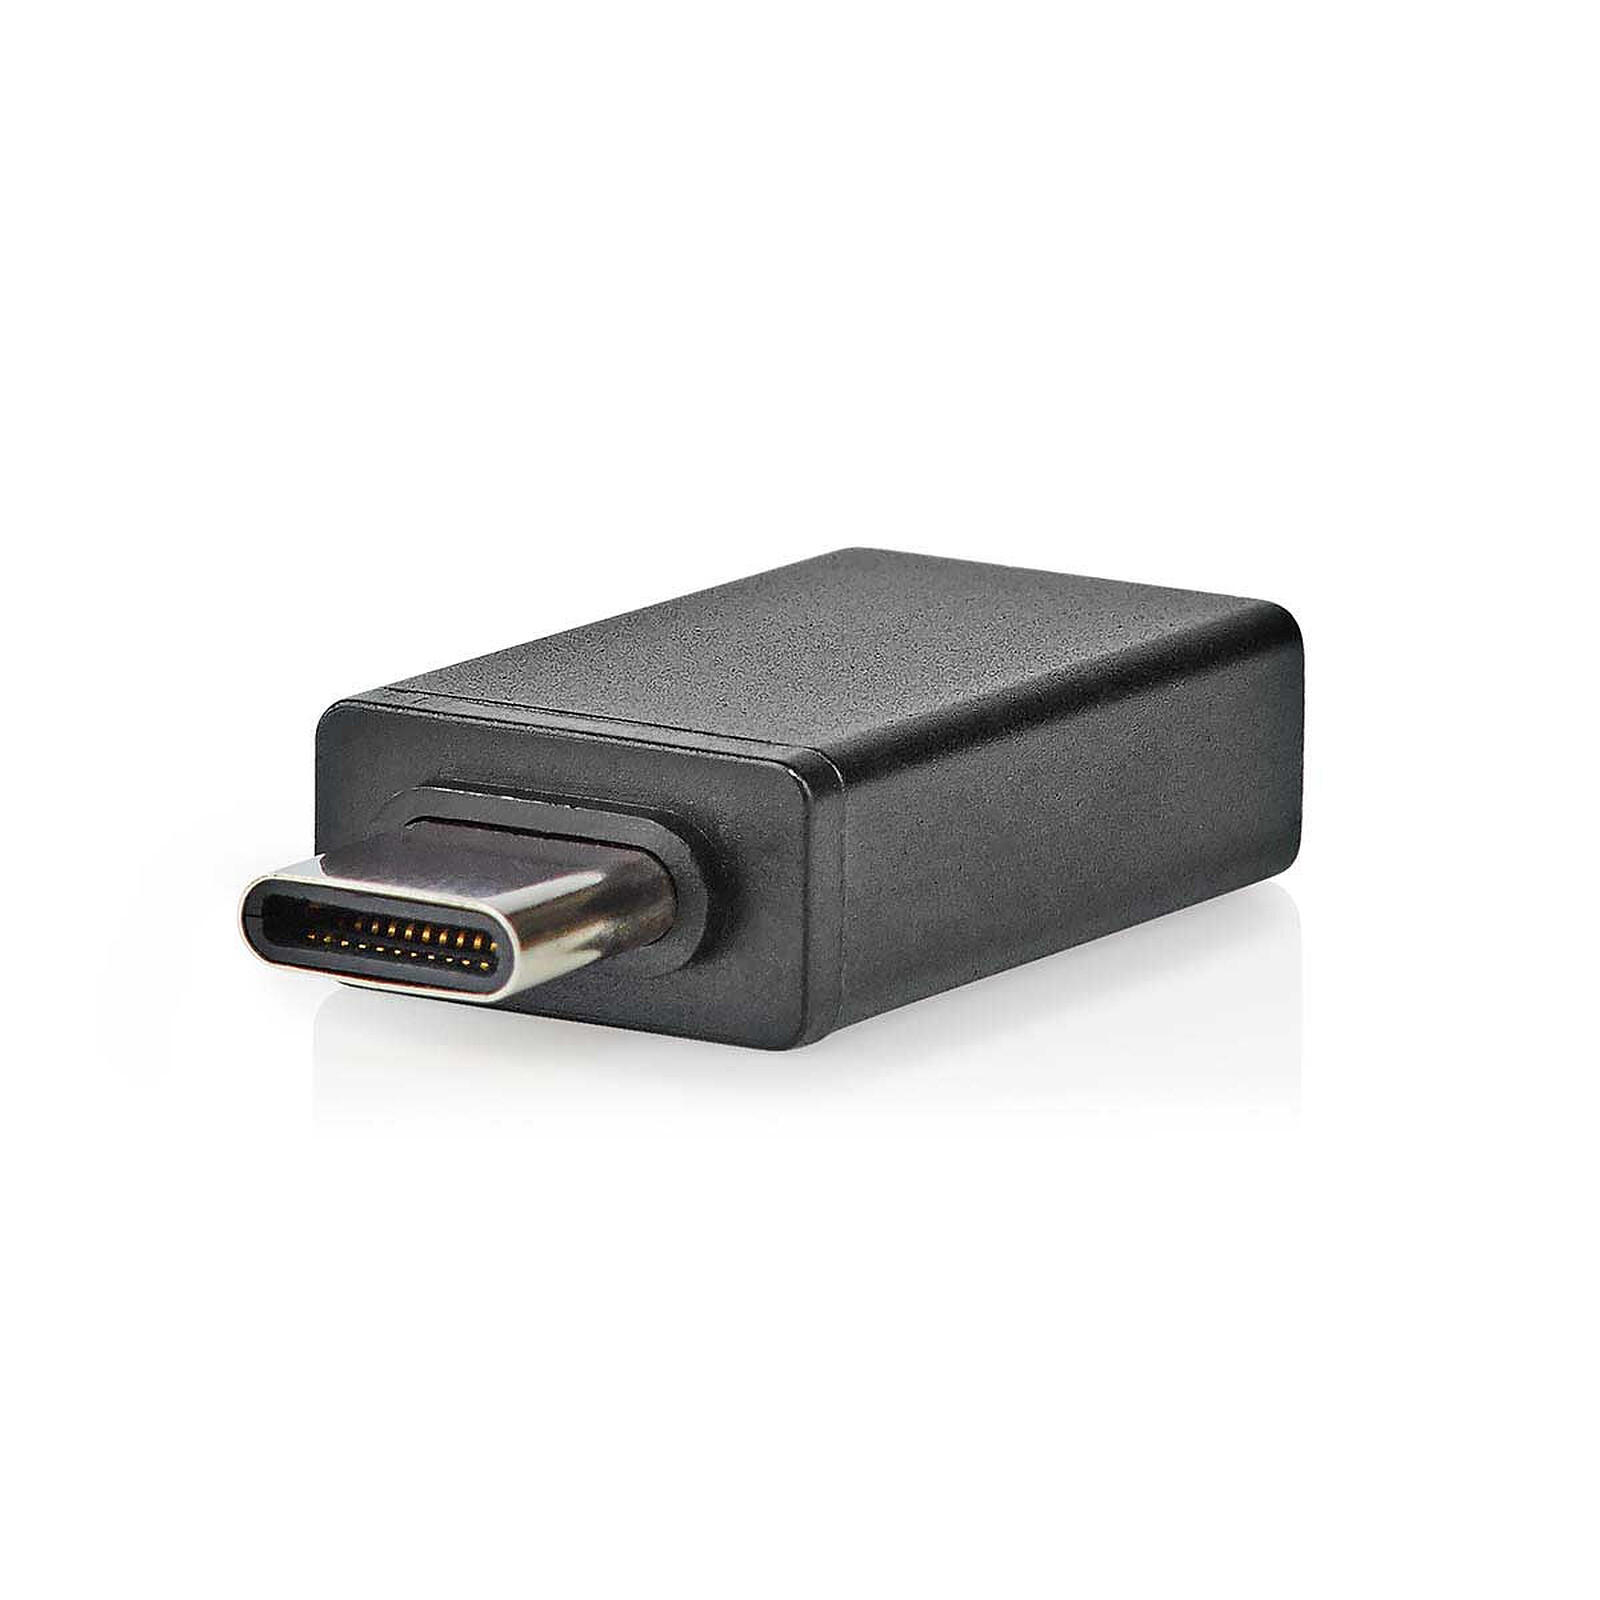 Usare l'adattatore da USB-C a Ethernet e USB 3.0 per Surface - Supporto  tecnico Microsoft